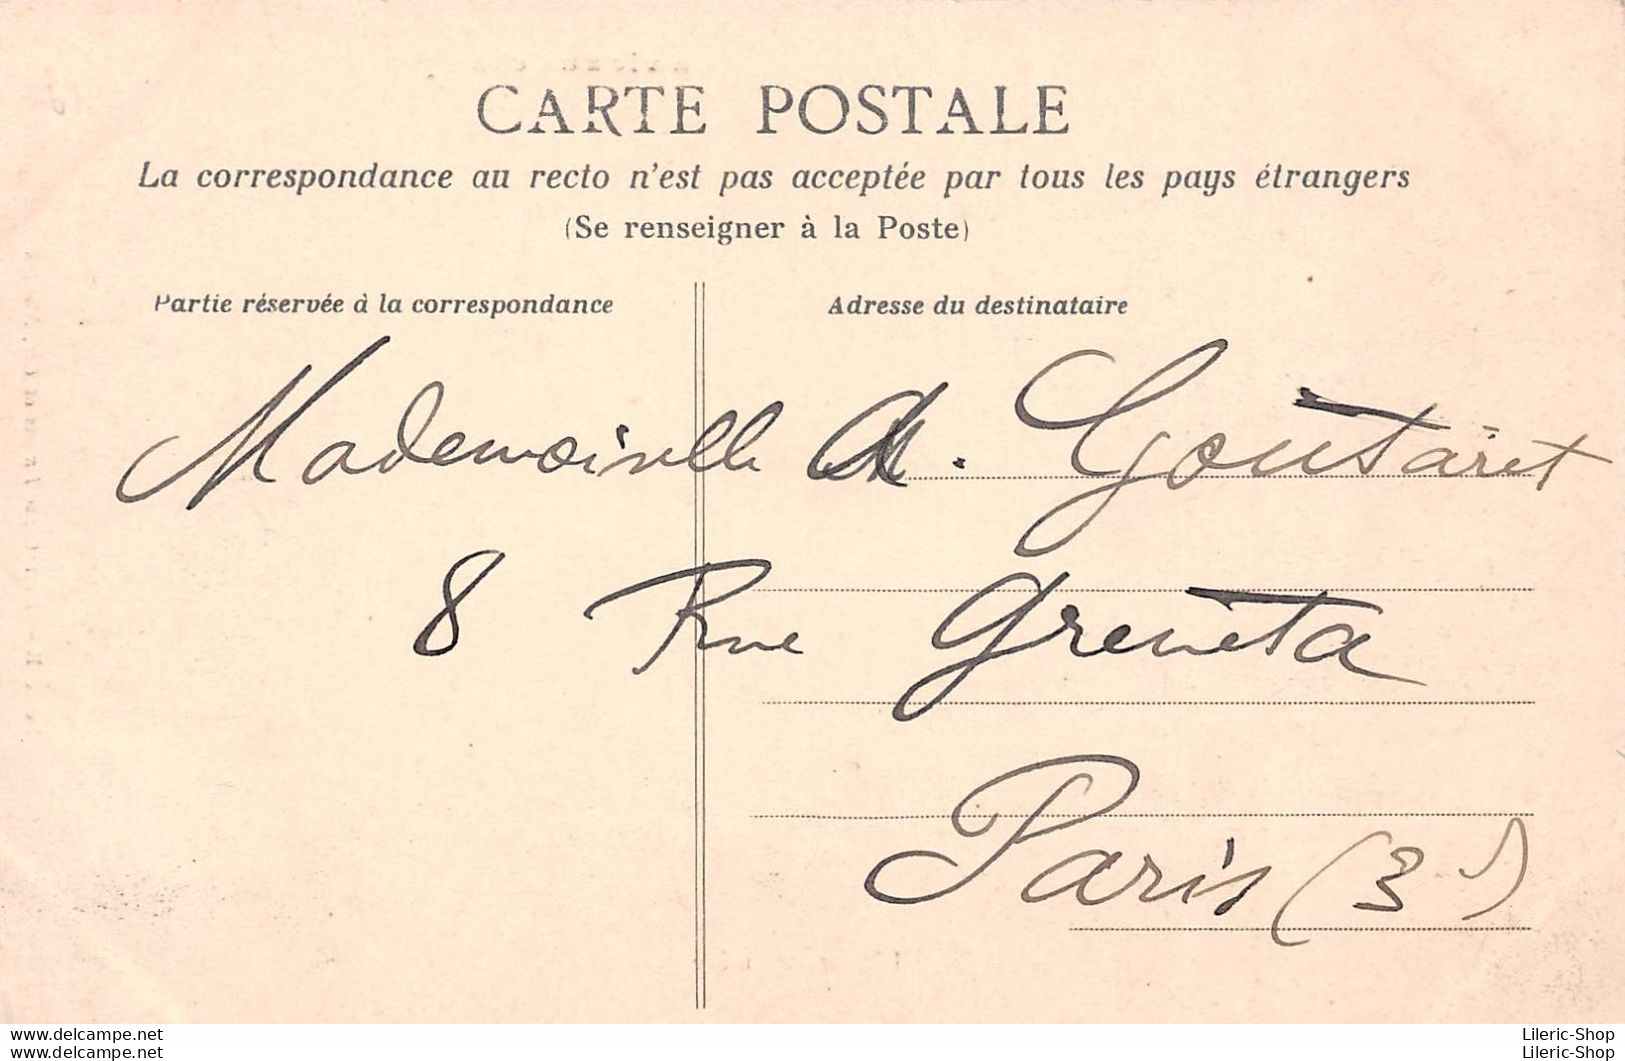 Cpa 1905 LA VIE AUX CHAMPS L'Heureuse Mère Fermière Intérieur De Ferme Rosaire ▬ Série B Dugas Et Cie - Boerderijen